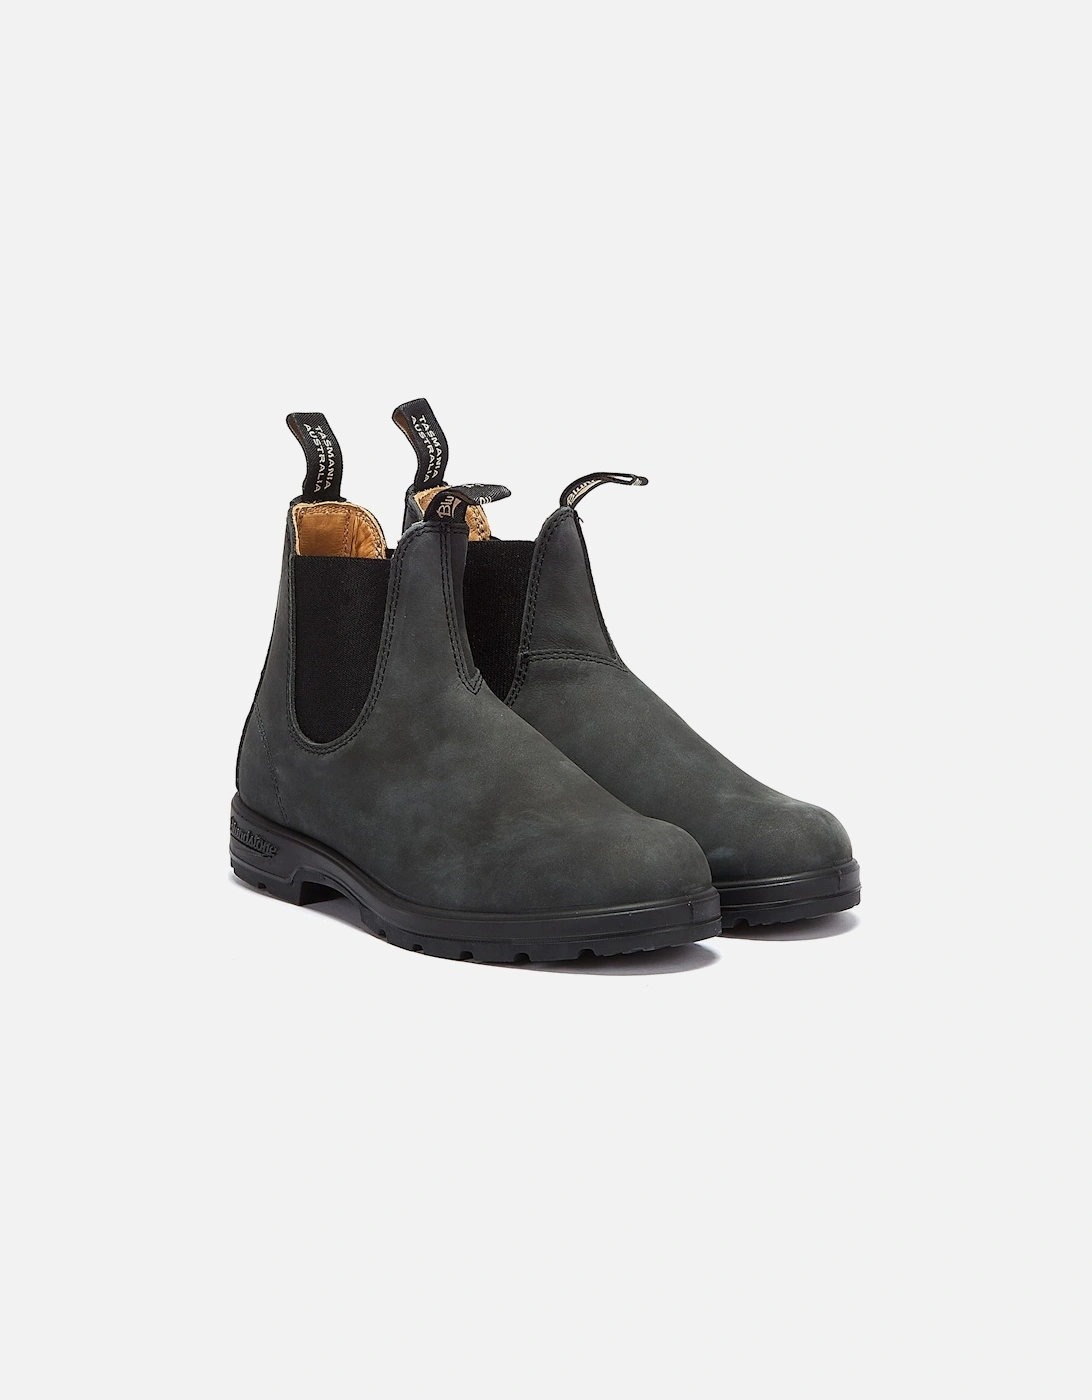 Classics 587 Rustic Black Boots, 9 of 8